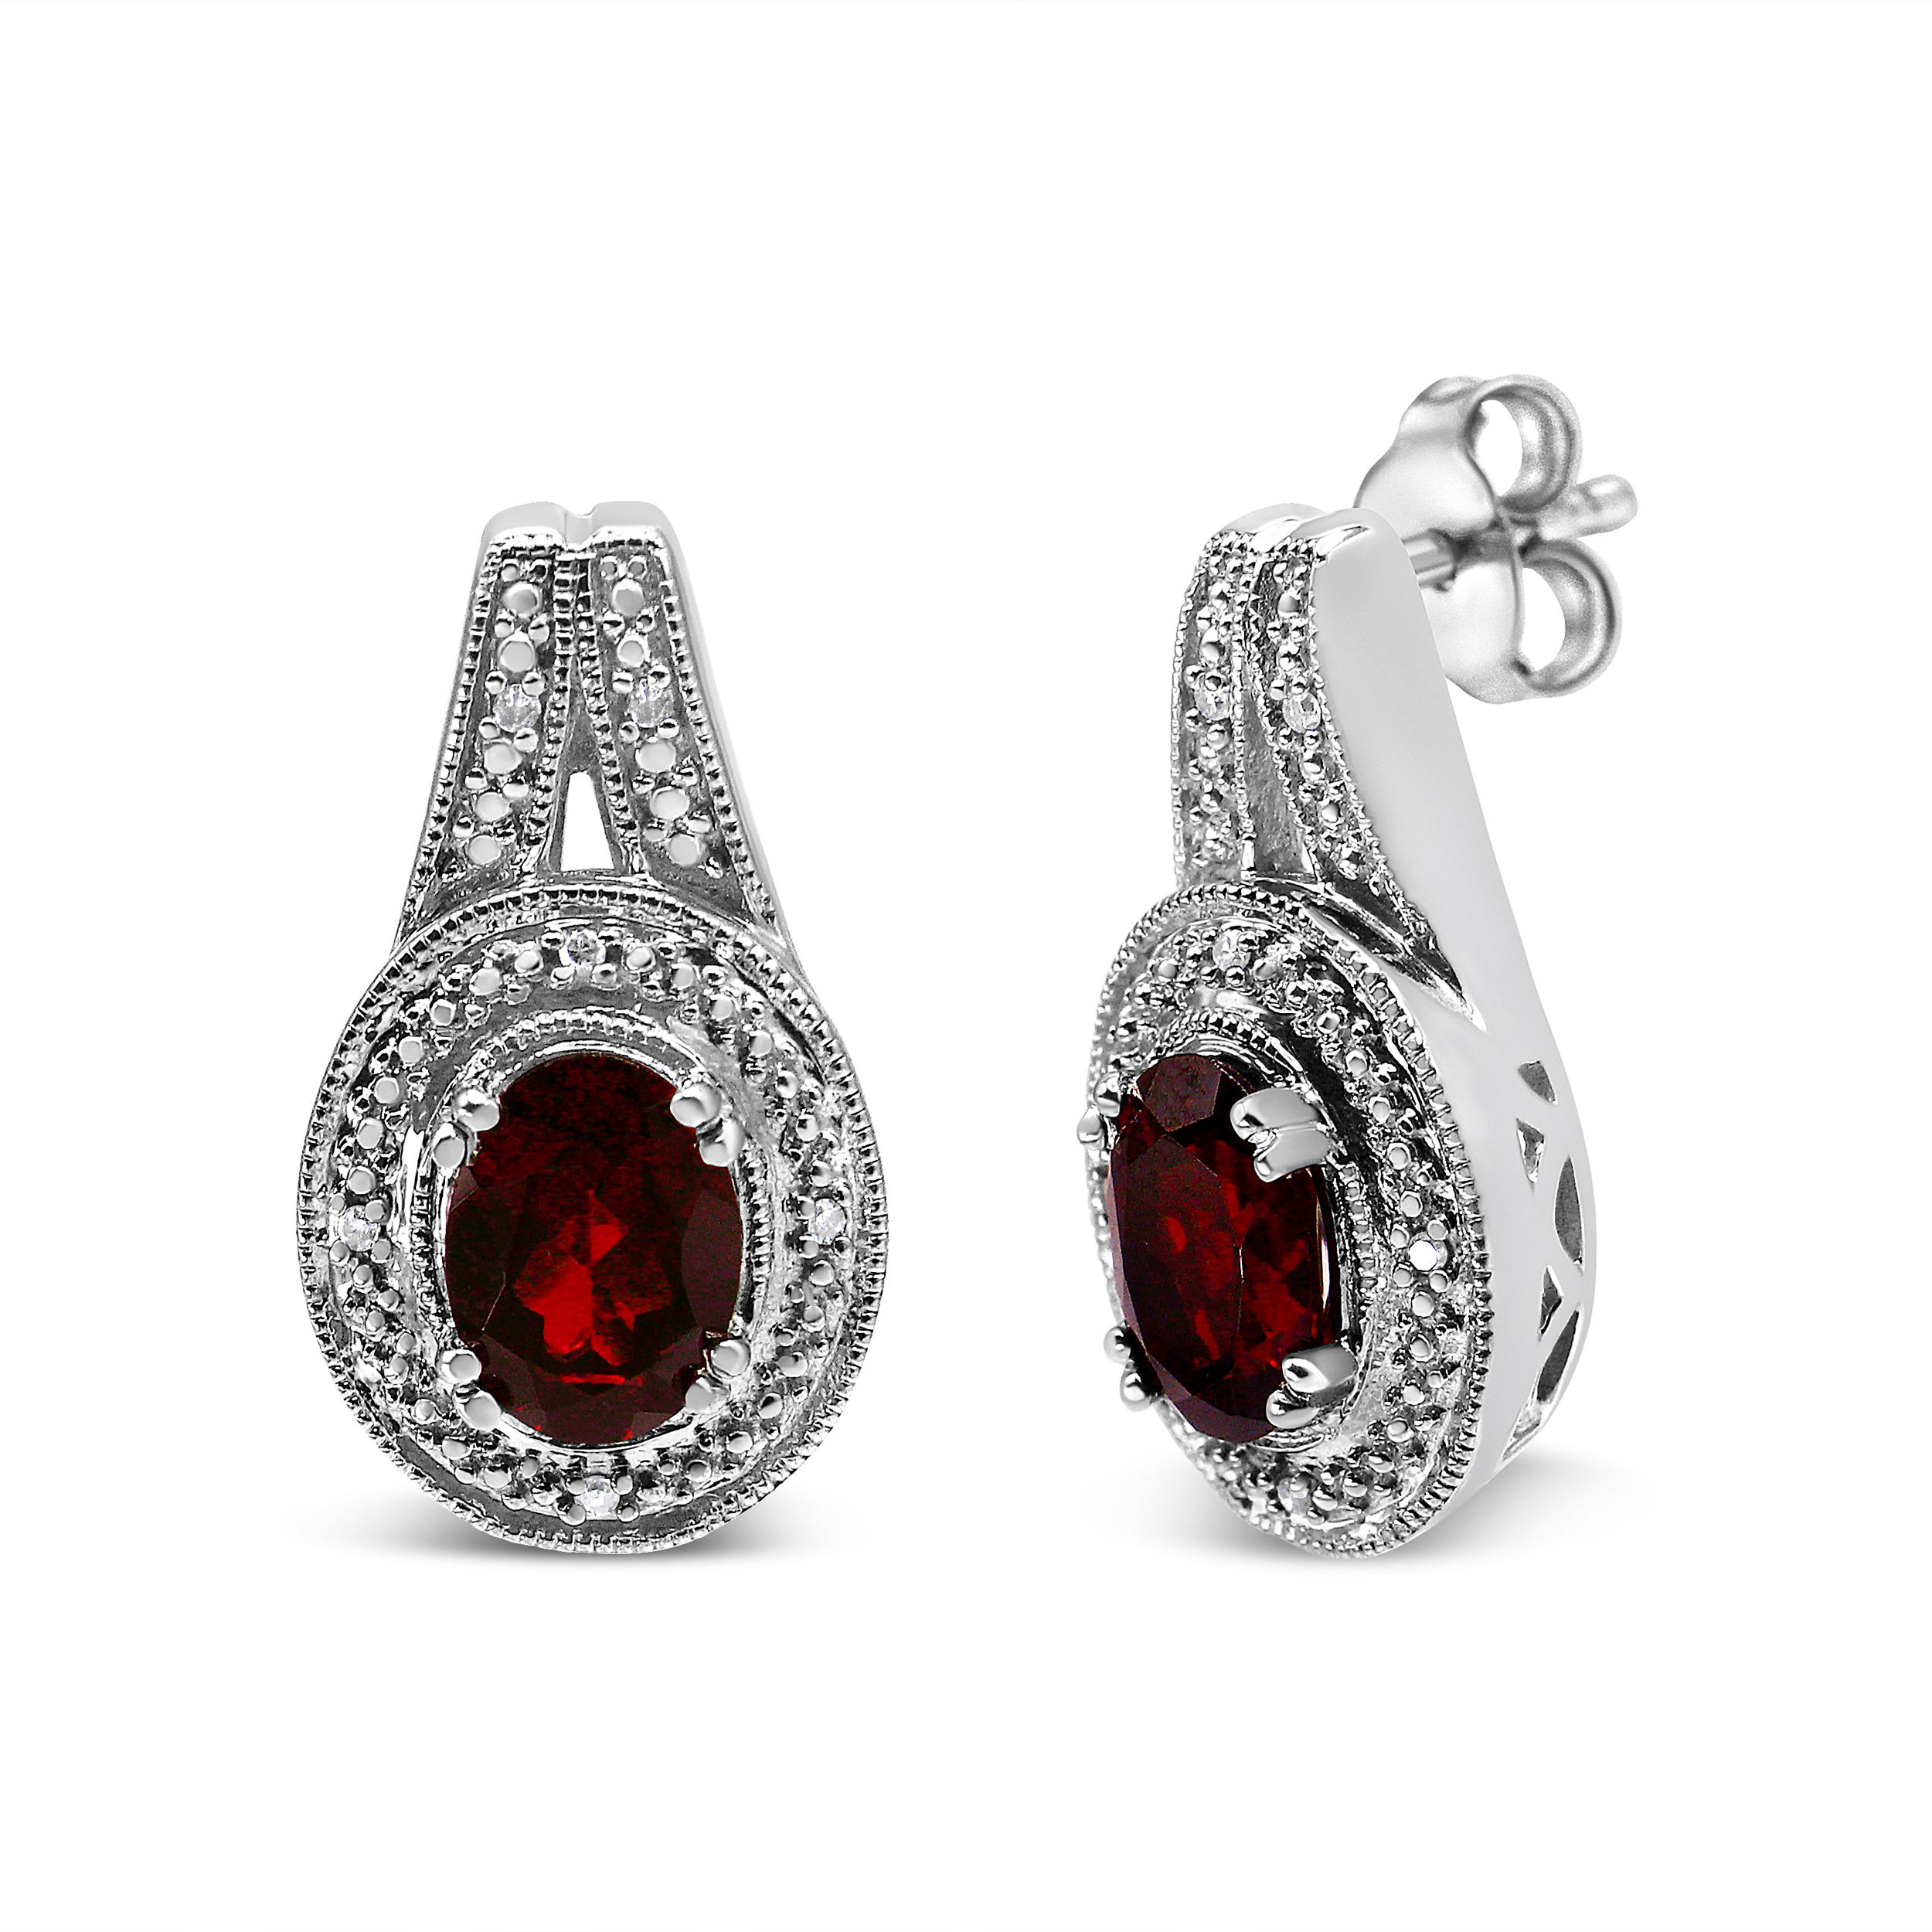 Dieses Paar modischer Ohrstecker in tiefem Rot strahlt einen königlichen Charme aus und ist einfach elegant. Der kühne 8*6 mm große ovale Granat-Edelstein ist von einem hübschen Milgrain-Design-Motiv und runden weißen Akzentdiamanten von ungefährer